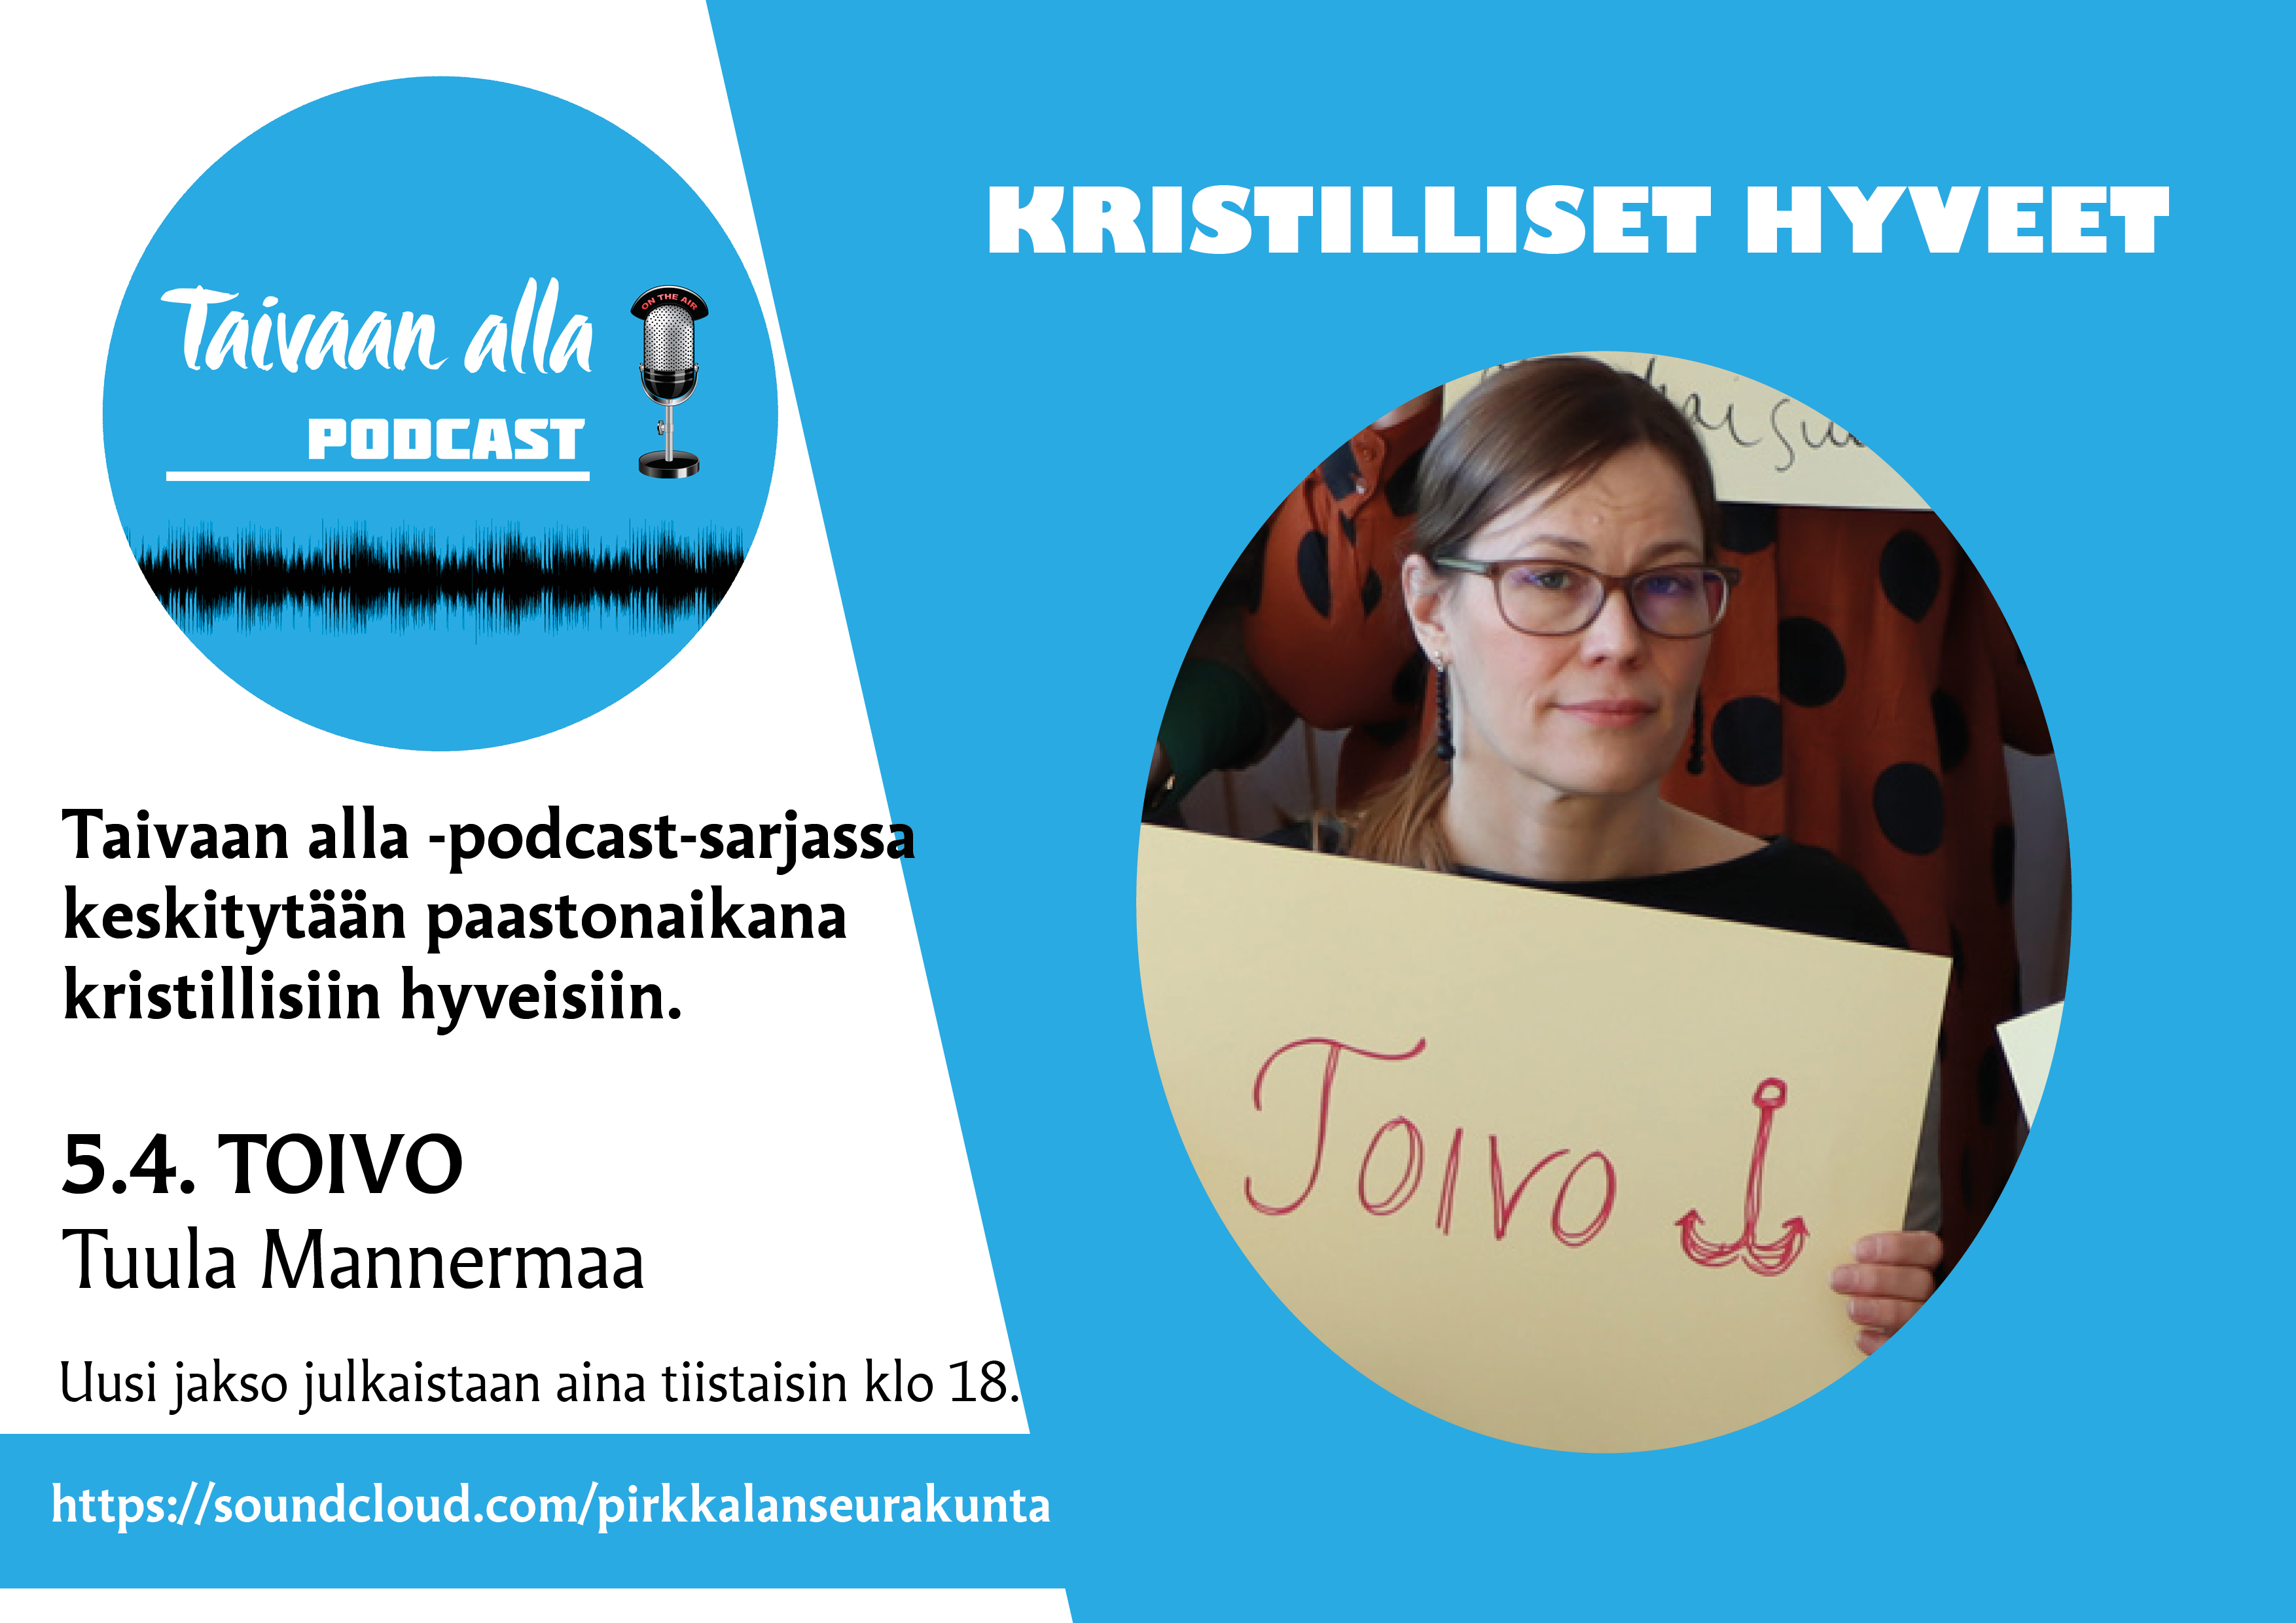 Pastori Tuula Mannermaa podcastin mainoksessa.